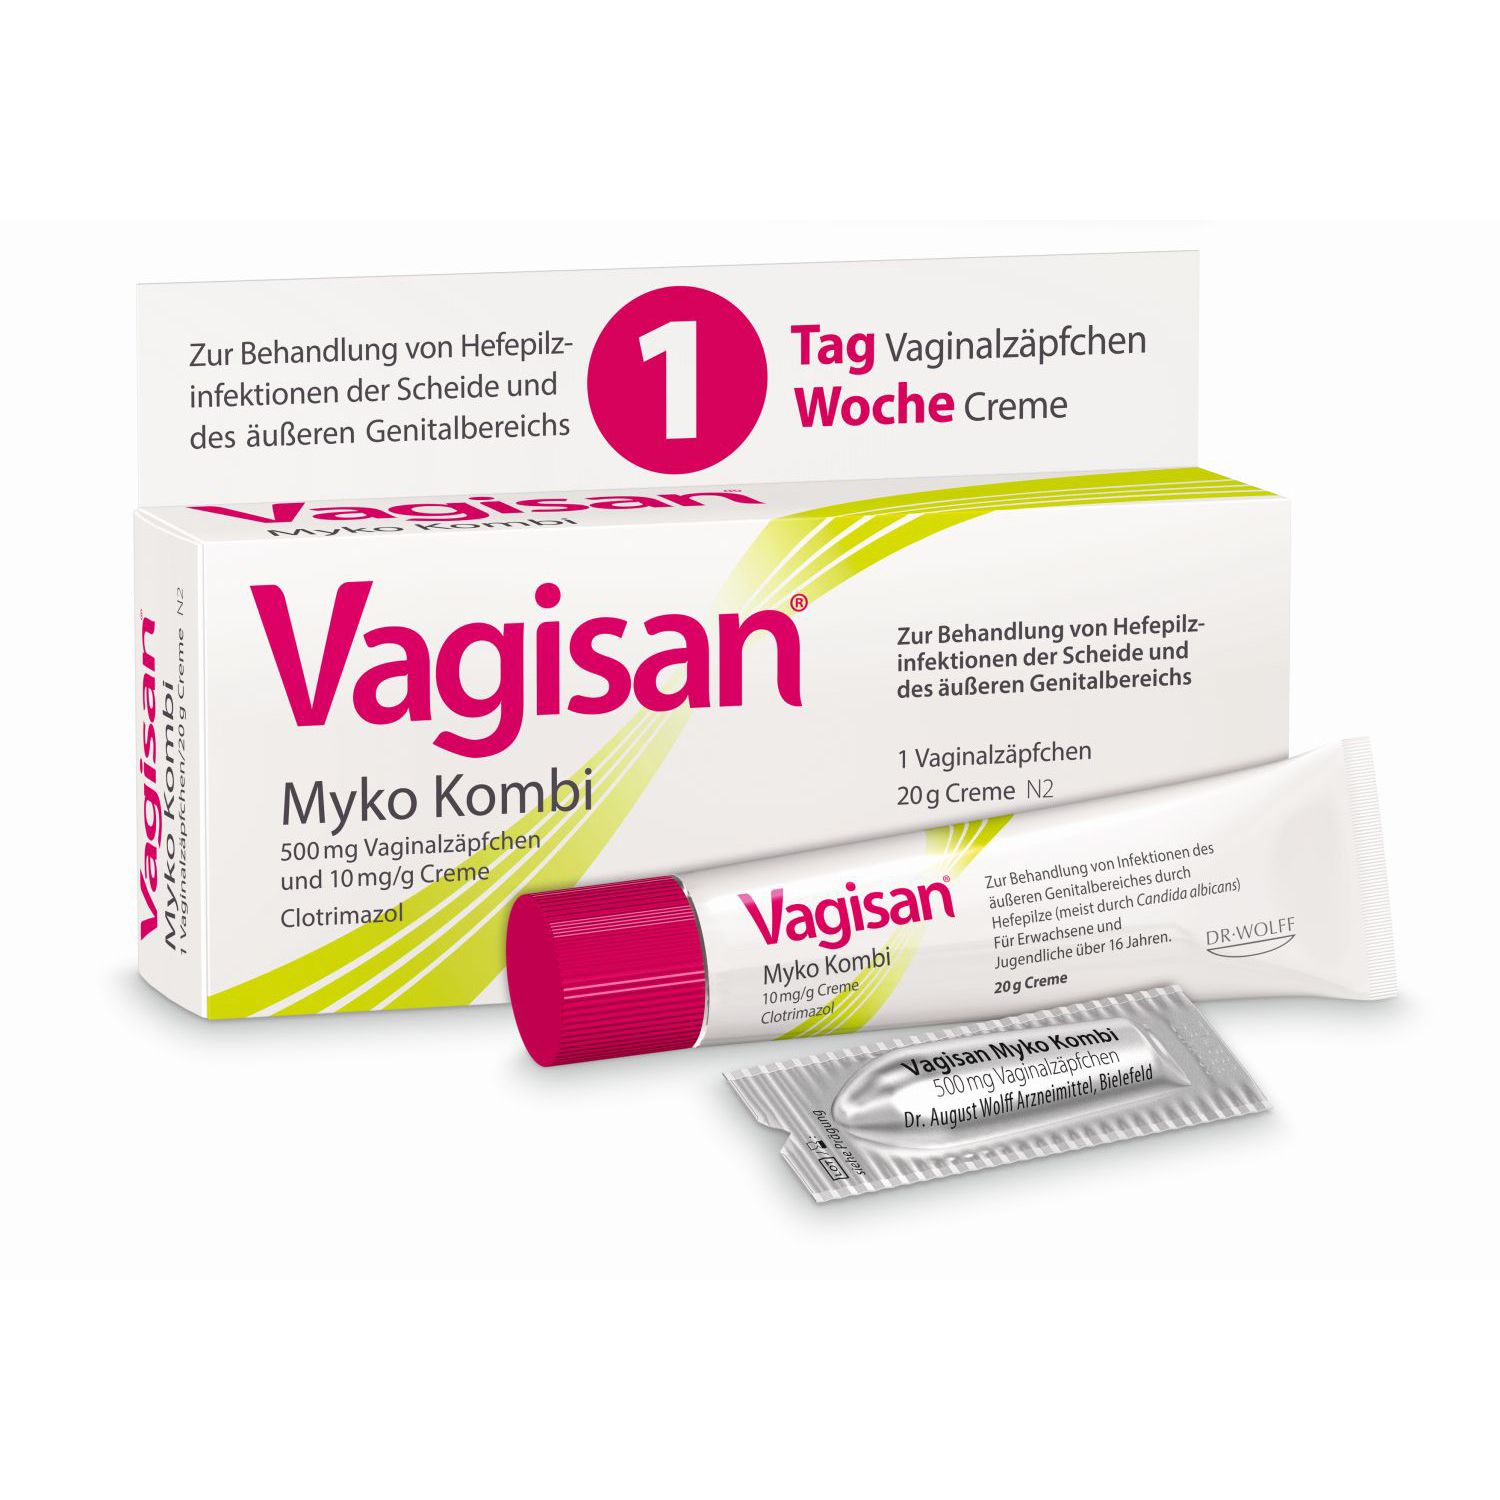 Vagisan Myko Kombi: Vaginalzäpfchen und Creme zur Behandlung von Scheidenpilz